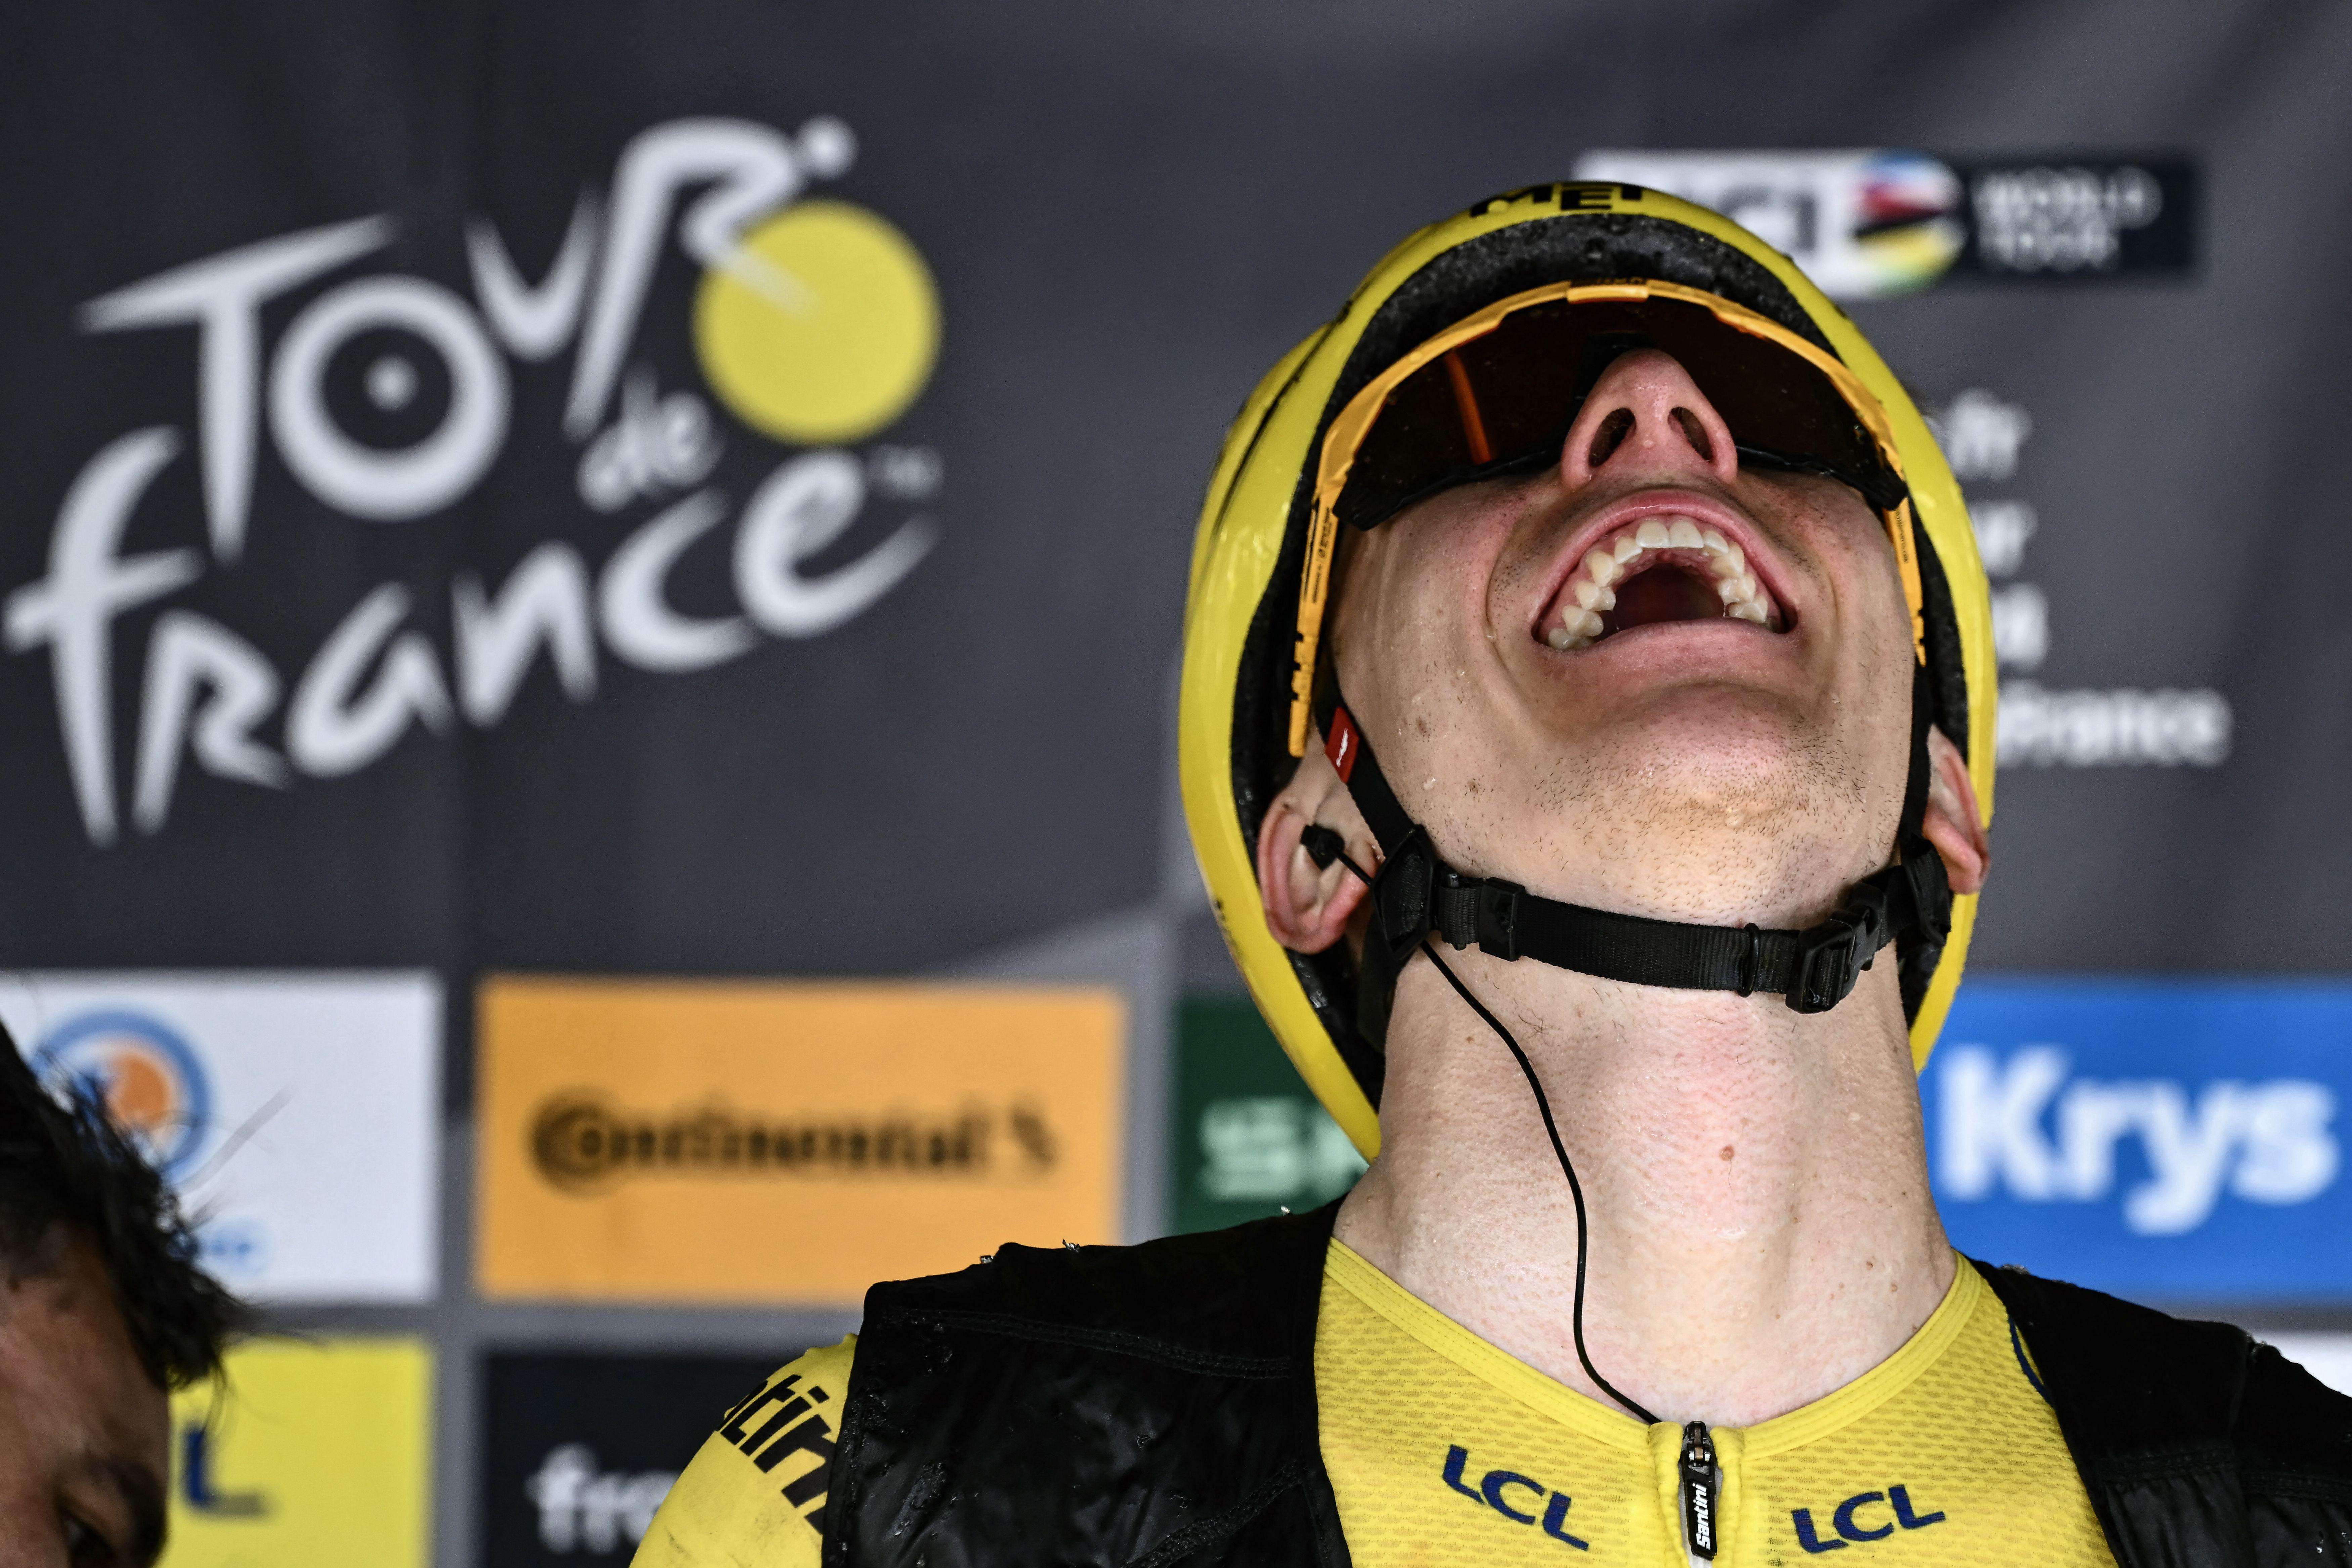 Tour de France - implacabile Pogacar: vince anche oggi davanti a Vingegaard